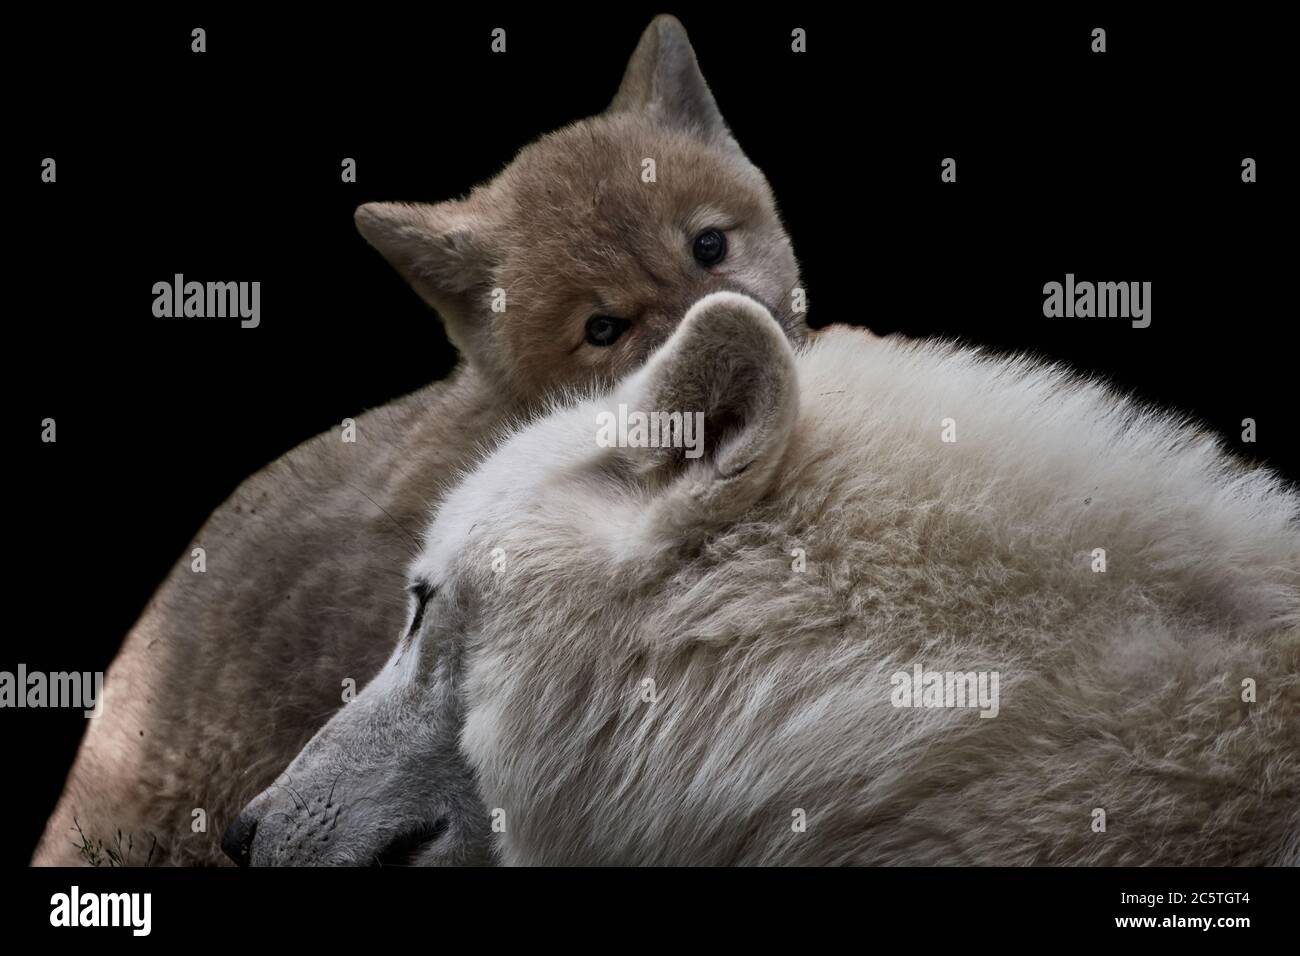 Carino lupo artico che si nasconde dietro la testa della madre e guardando la macchina fotografica (Canis lupus arctos) Foto Stock